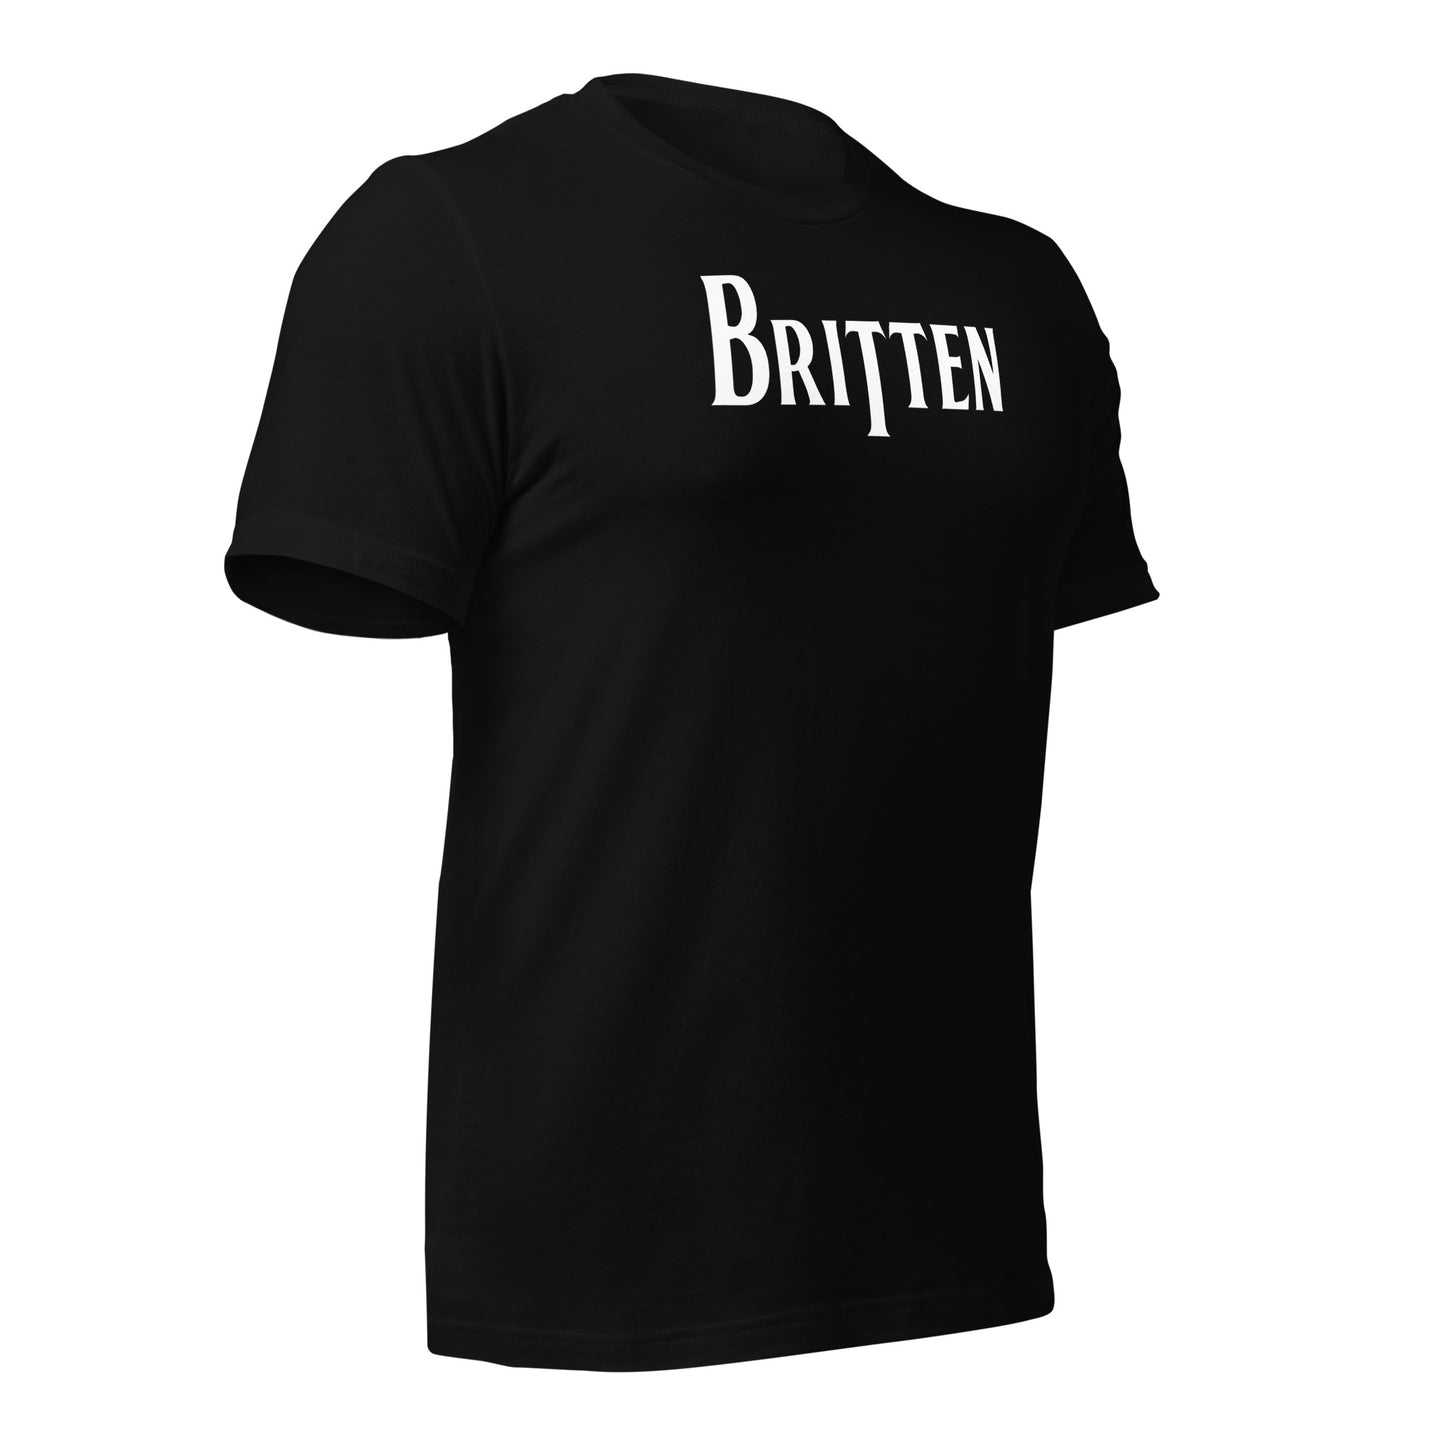 Benjamin Britten - Band Tees Unisex t-shirt